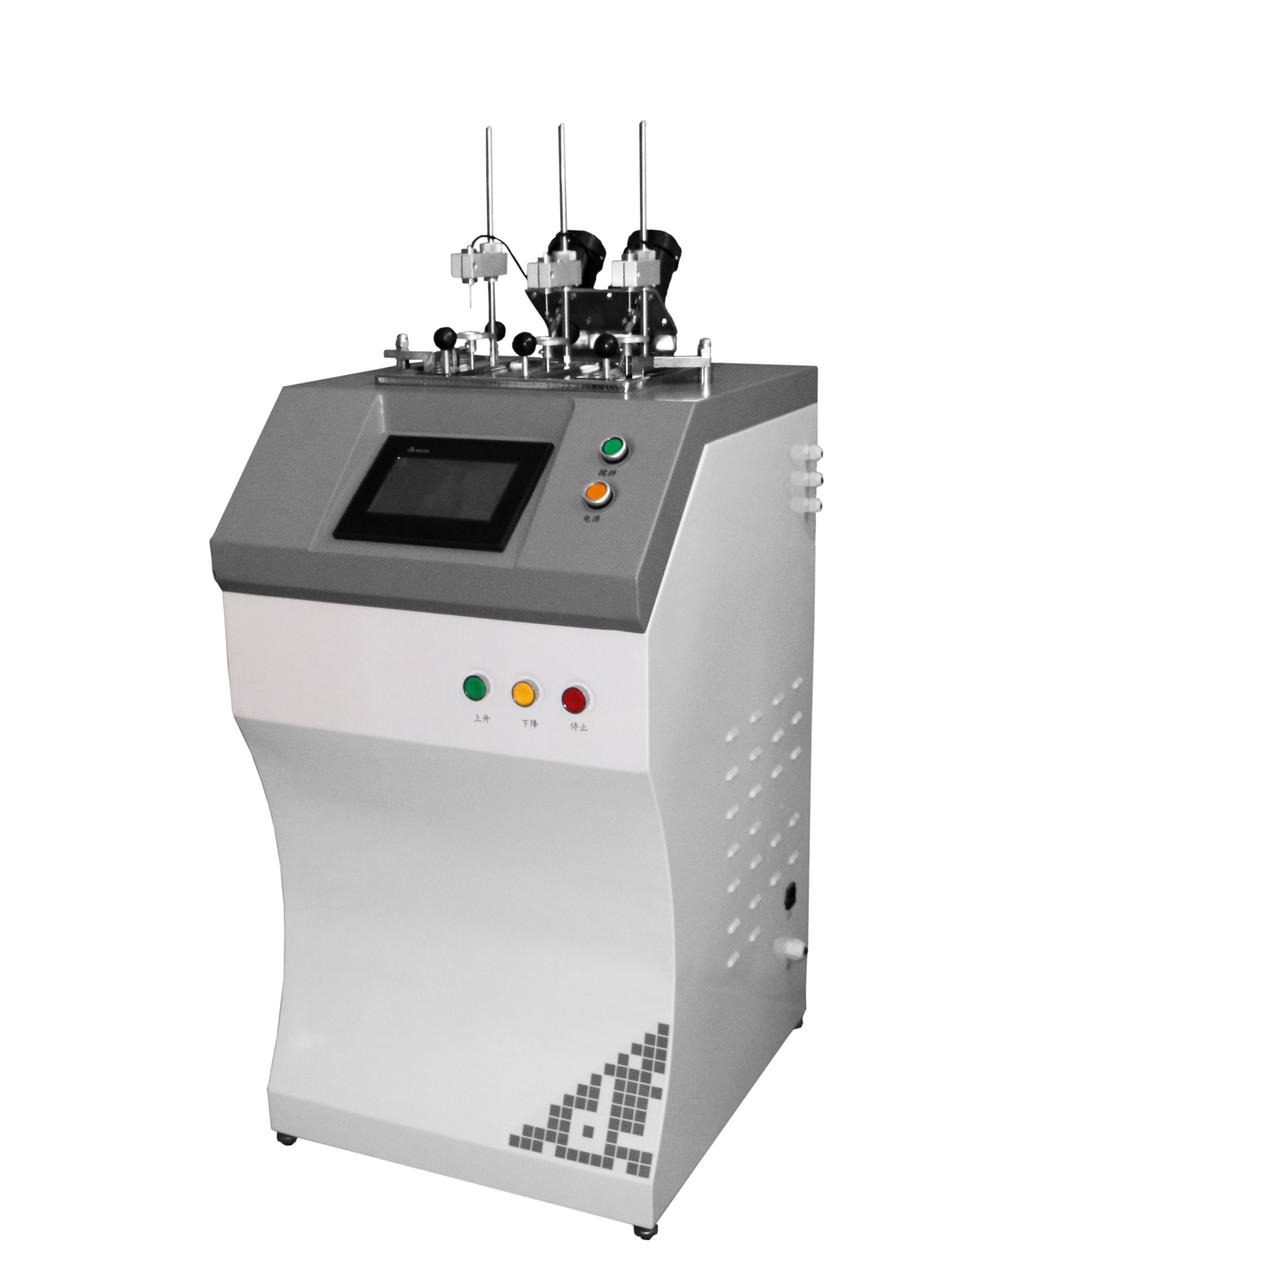 维卡仪  大加热变形测试仪 XRW-300UB 厂家推荐热变形维卡  维卡温度测定仪  热变形维卡测定仪 热变形仪